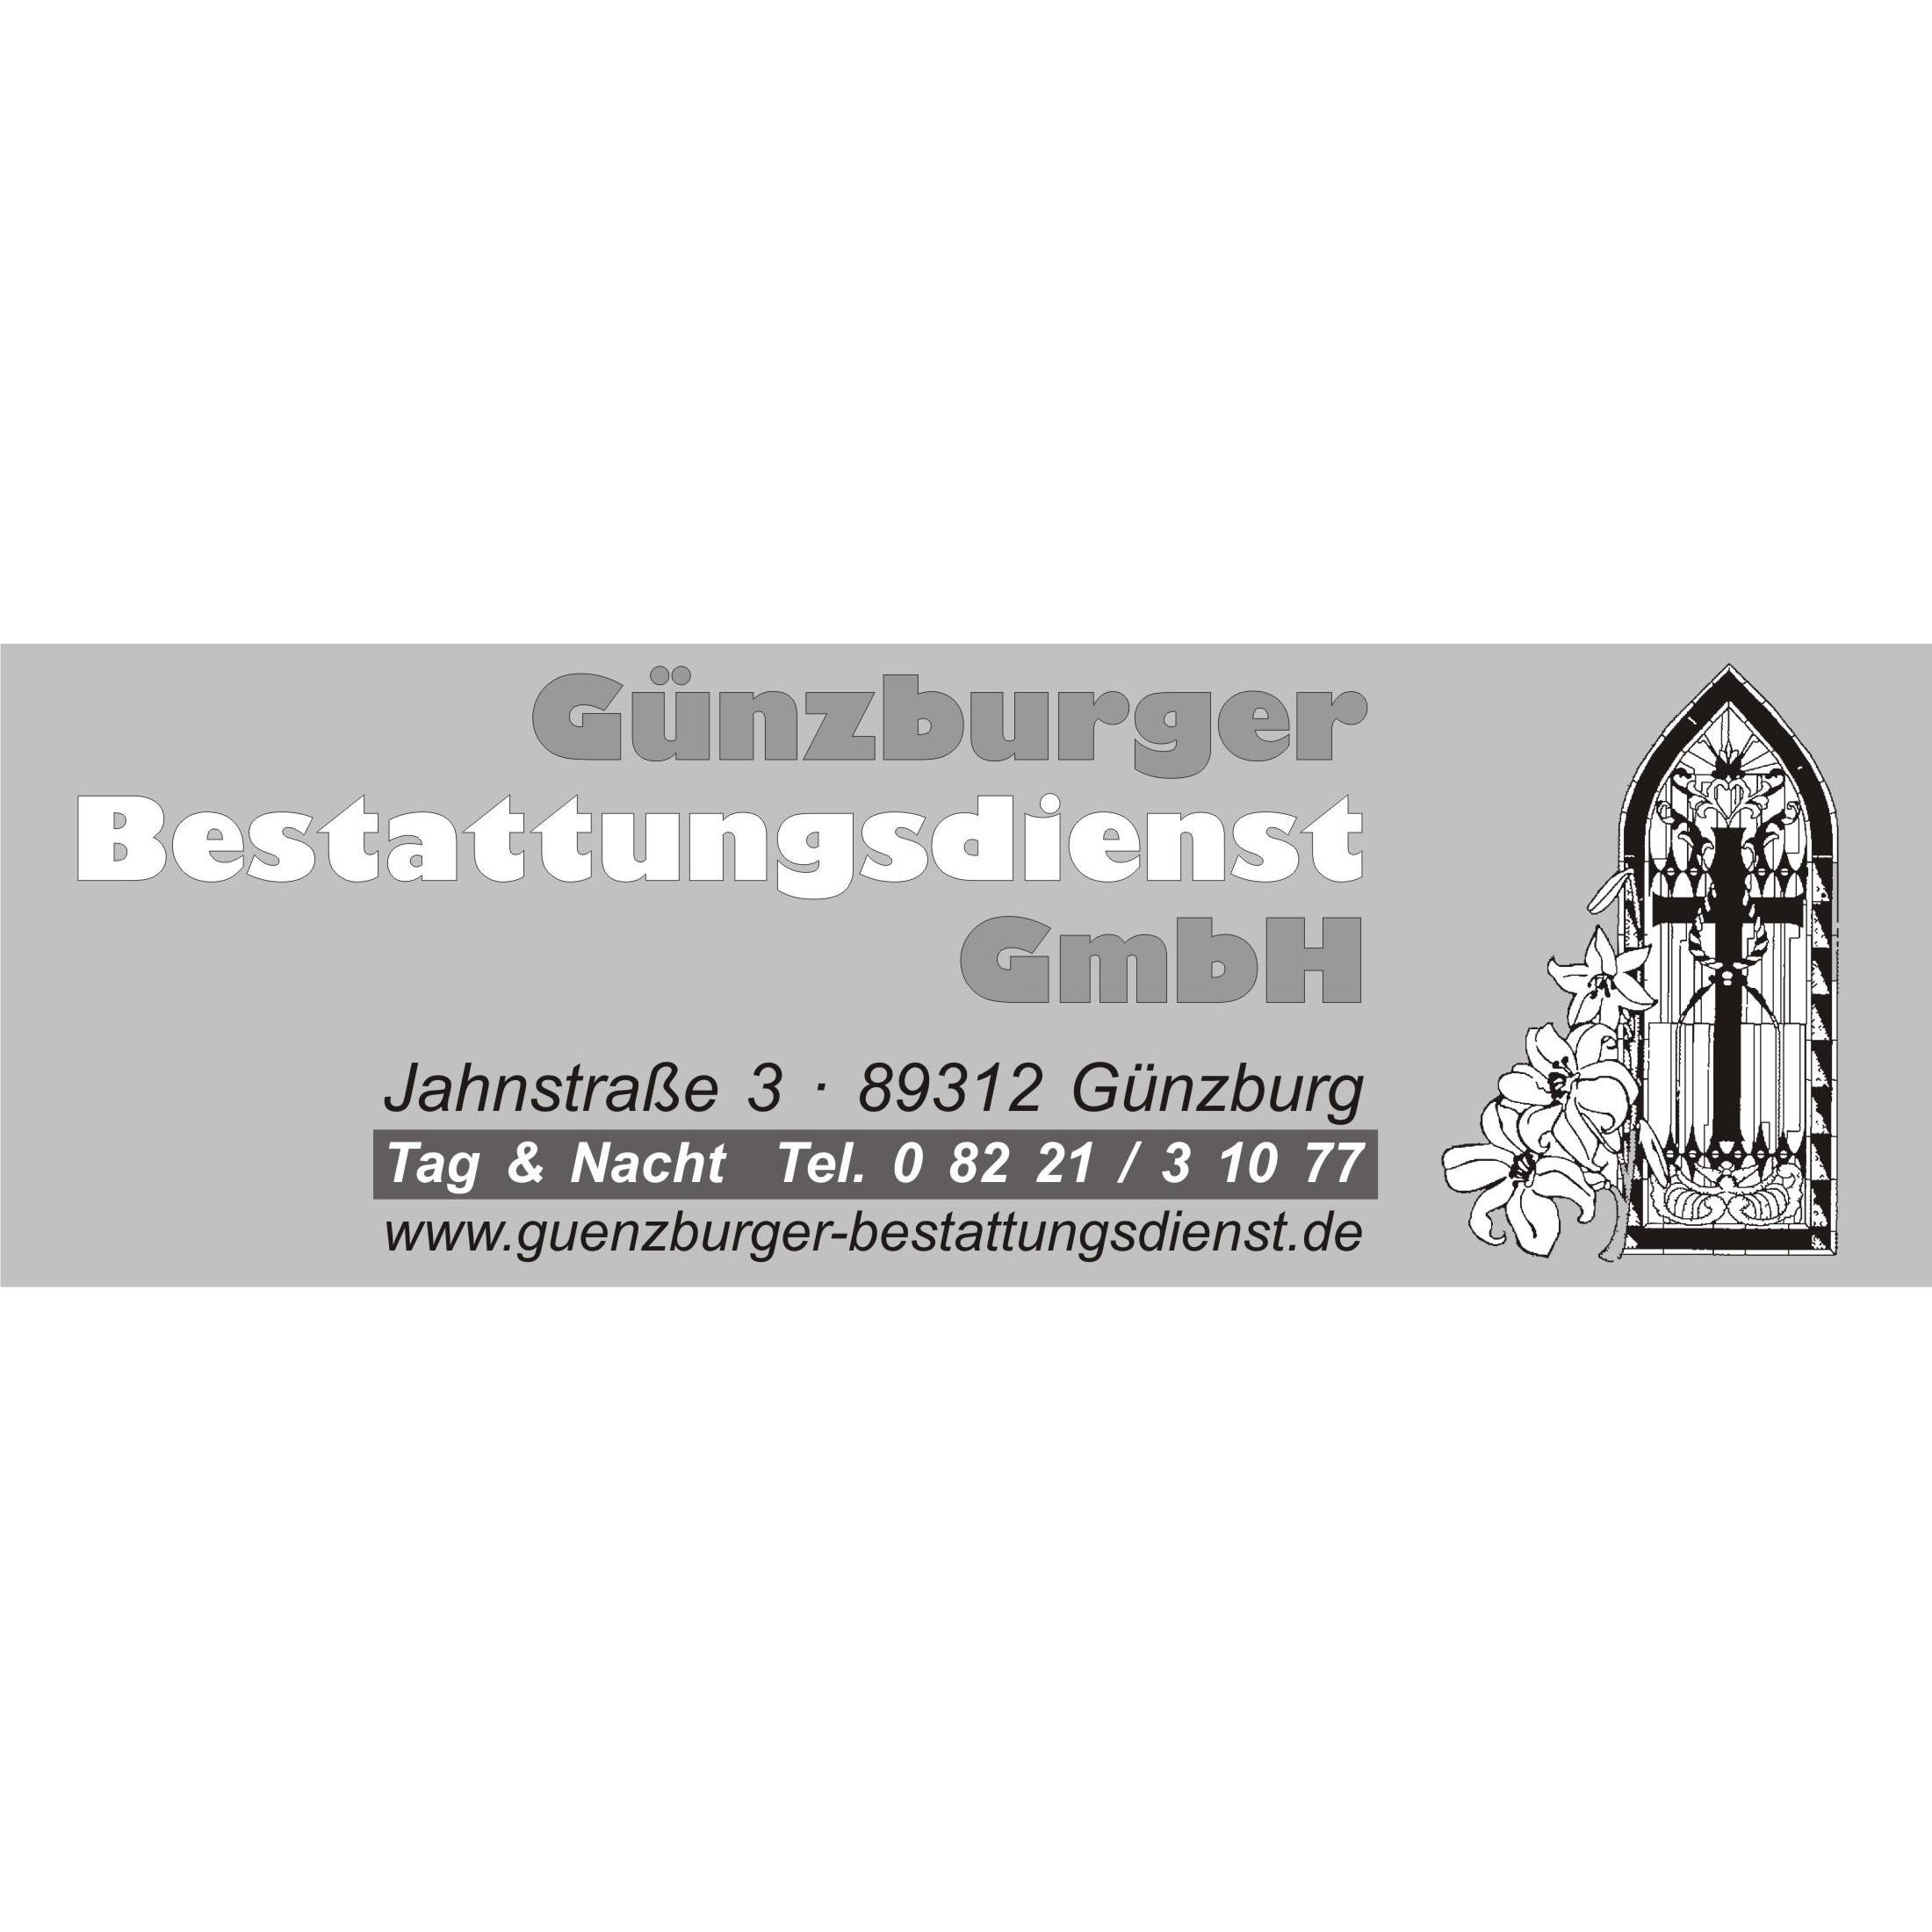 Günzburger Bestattungsdienst GmbH Logo